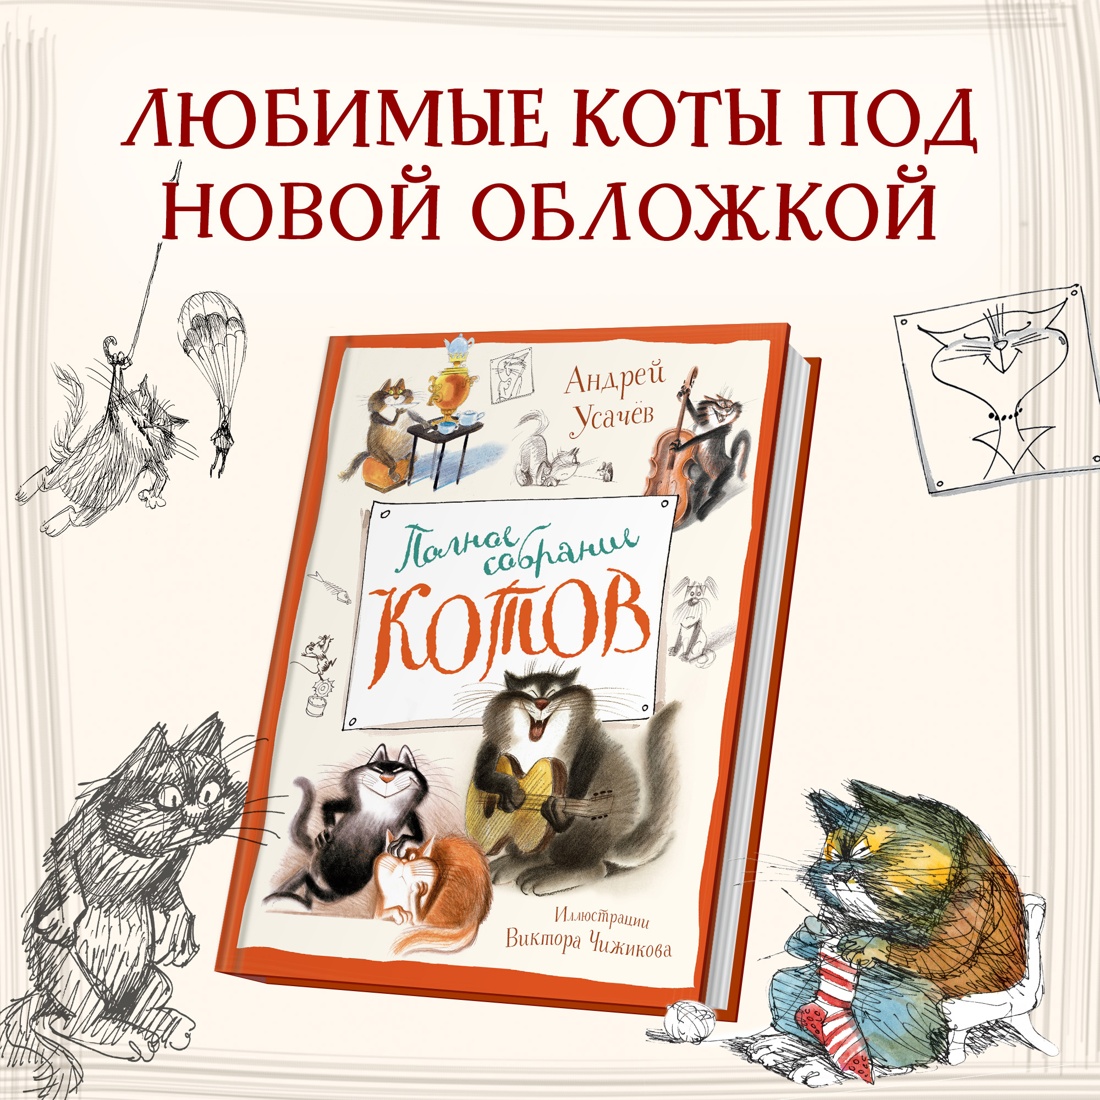 Промо материал к книге "Полное собрание котов" №0